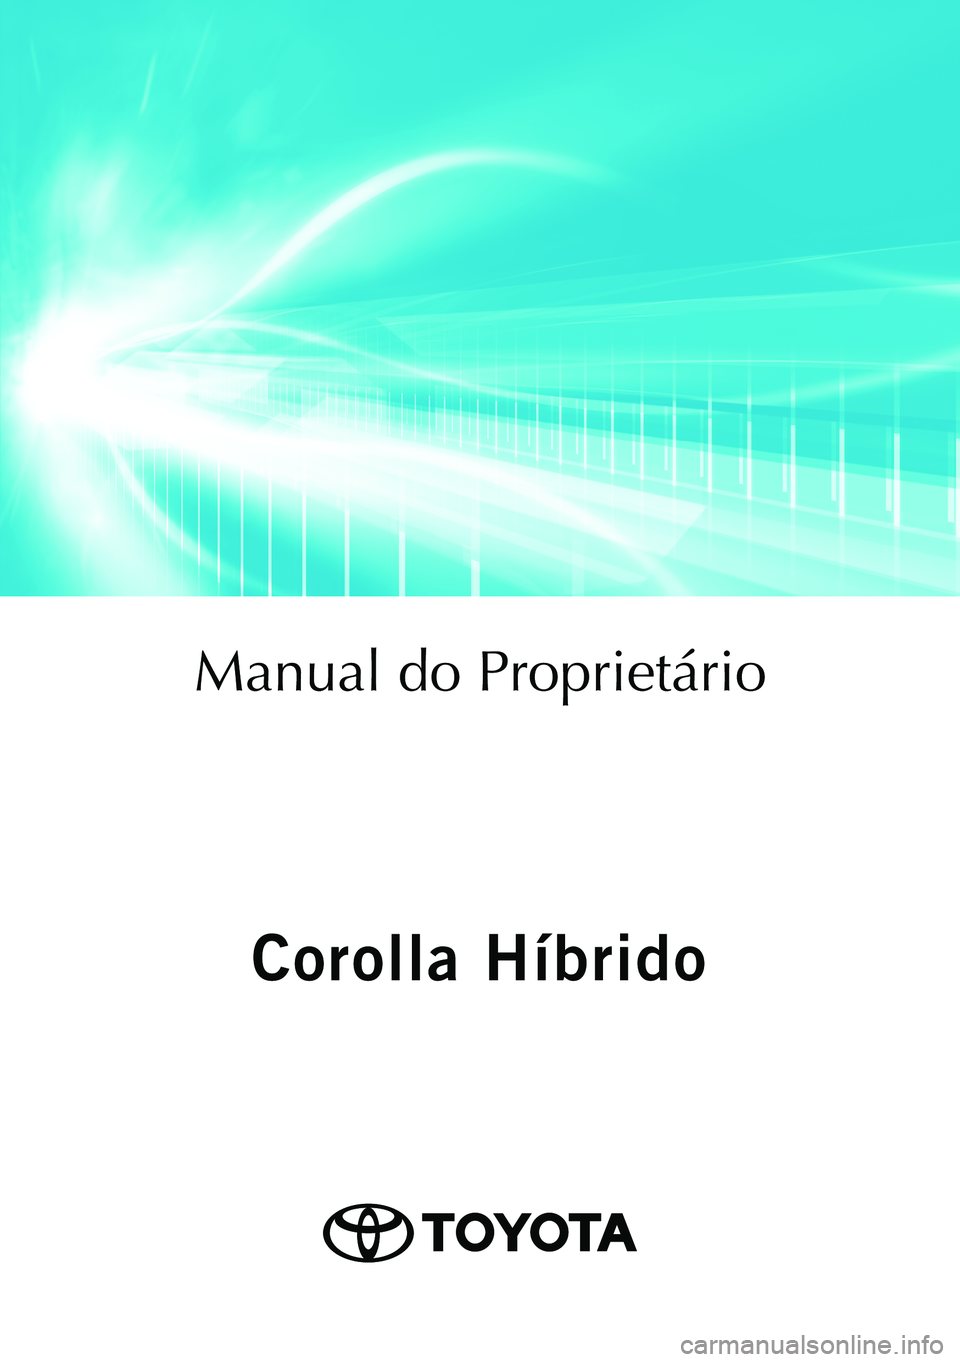 TOYOTA COROLLA 2020  Manual de utilização (in Portuguese) Corolla Híbrido
Corolla Híbrido
Manual do Proprietário
Mod. OM12P19PT
Public. N.º OM12P19E
ORGAL-PORTO 